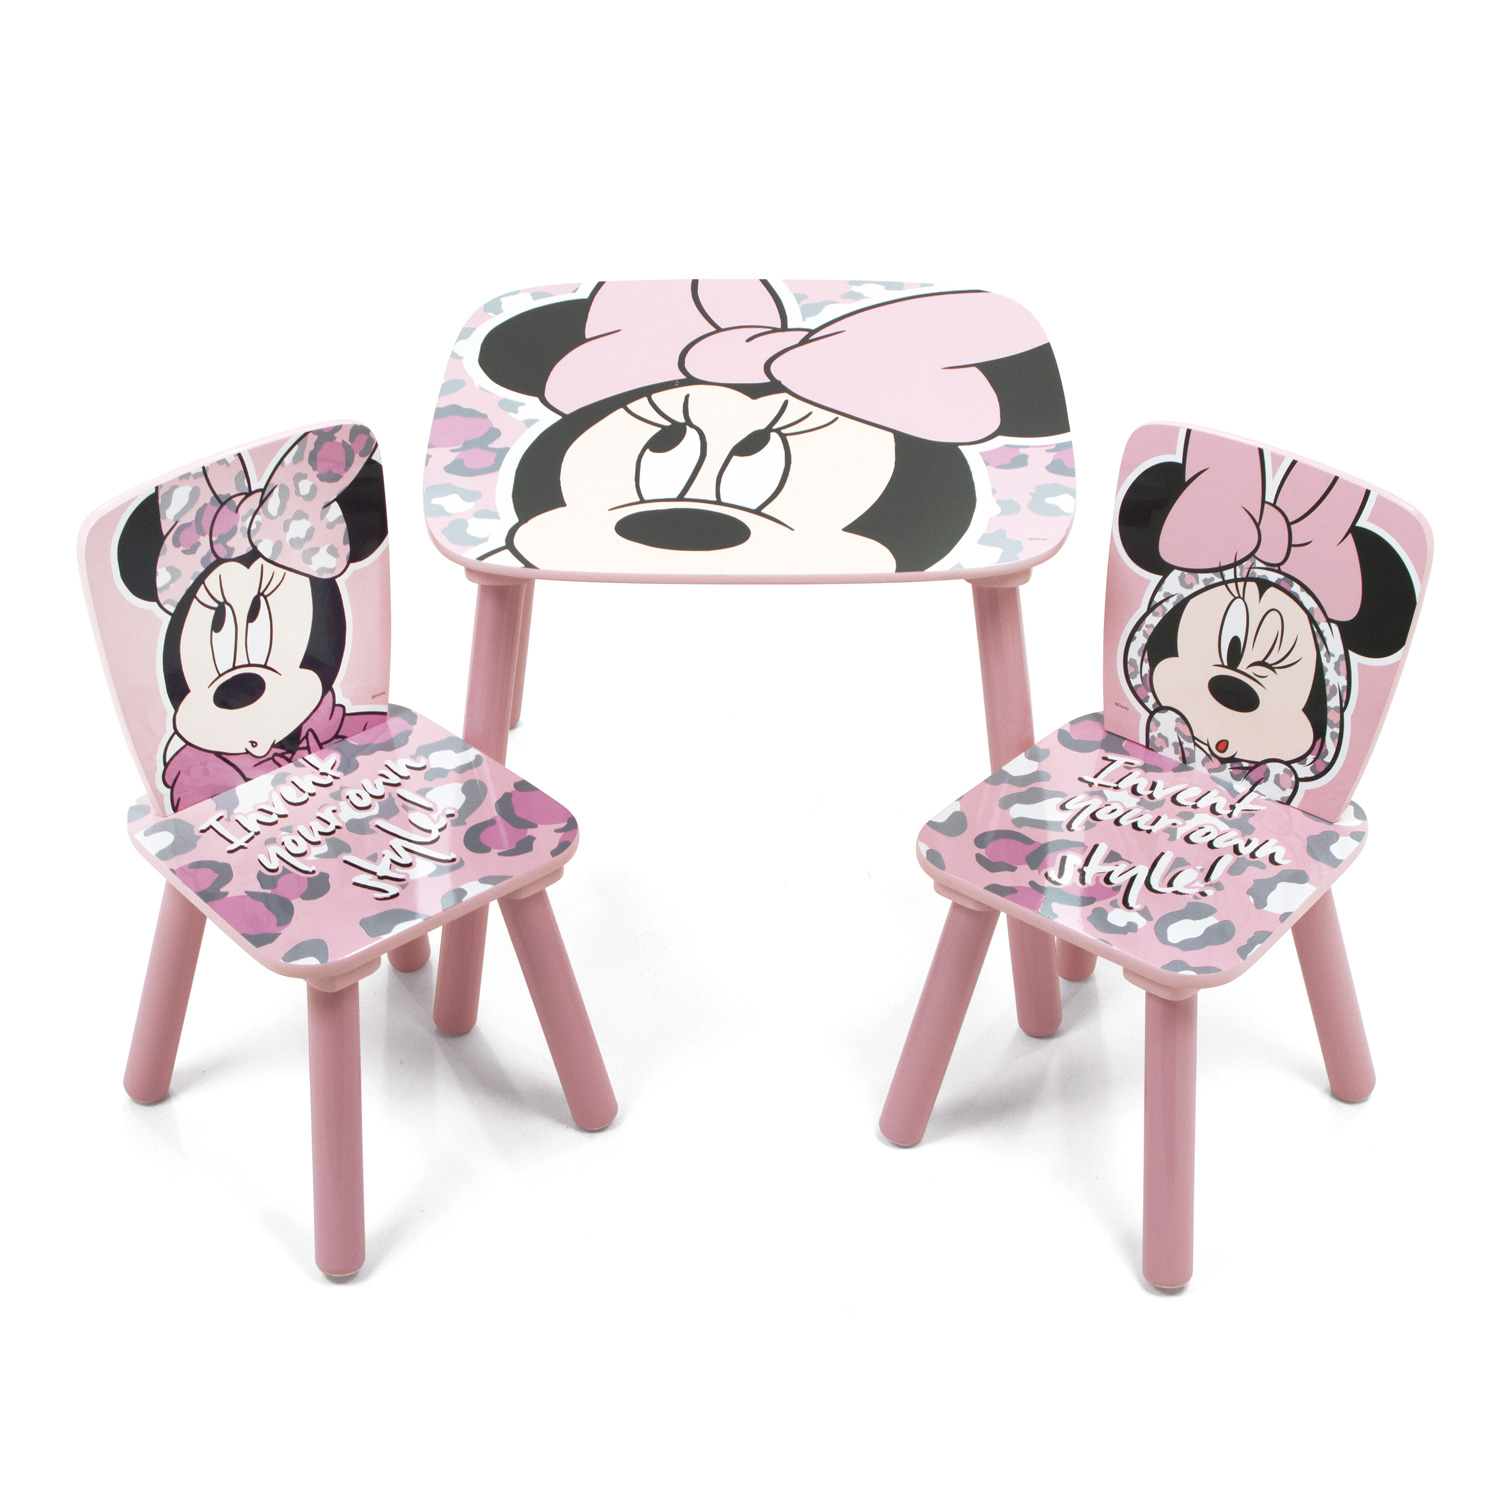 fluiten Creatie Noord West Houten Kindermeubels Minnie Mouse | Thimble Toys